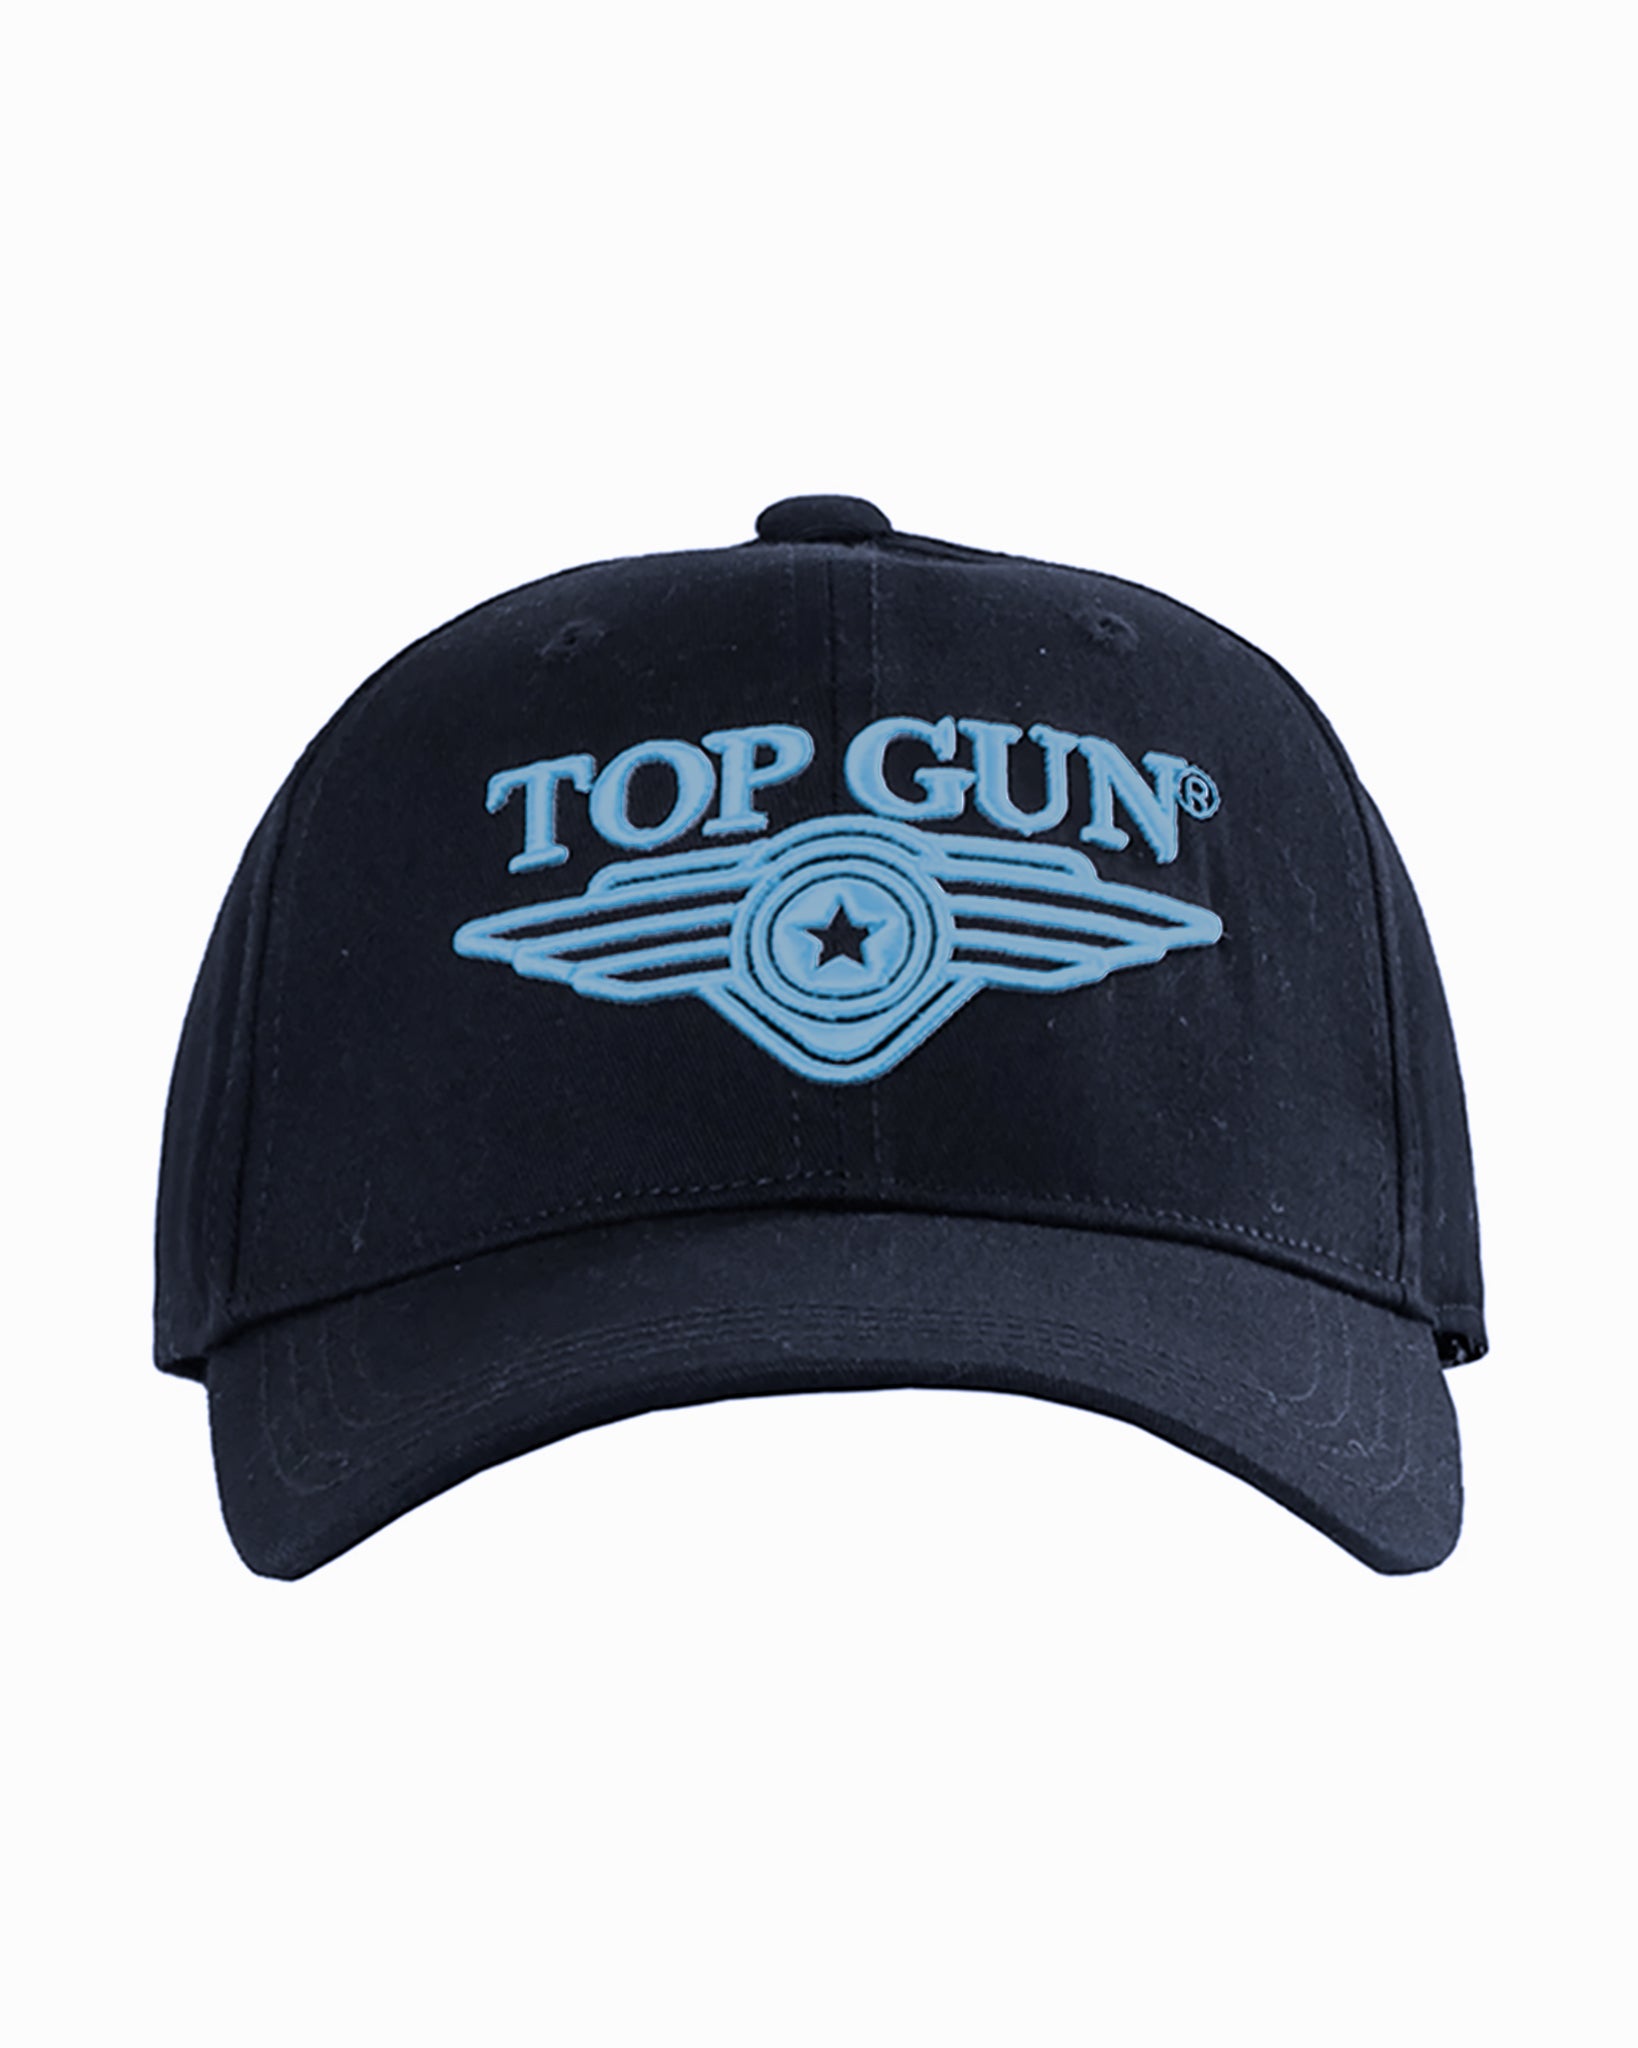 WINGS GUN® TOP Gun CAP LOGO Store 3D – Top